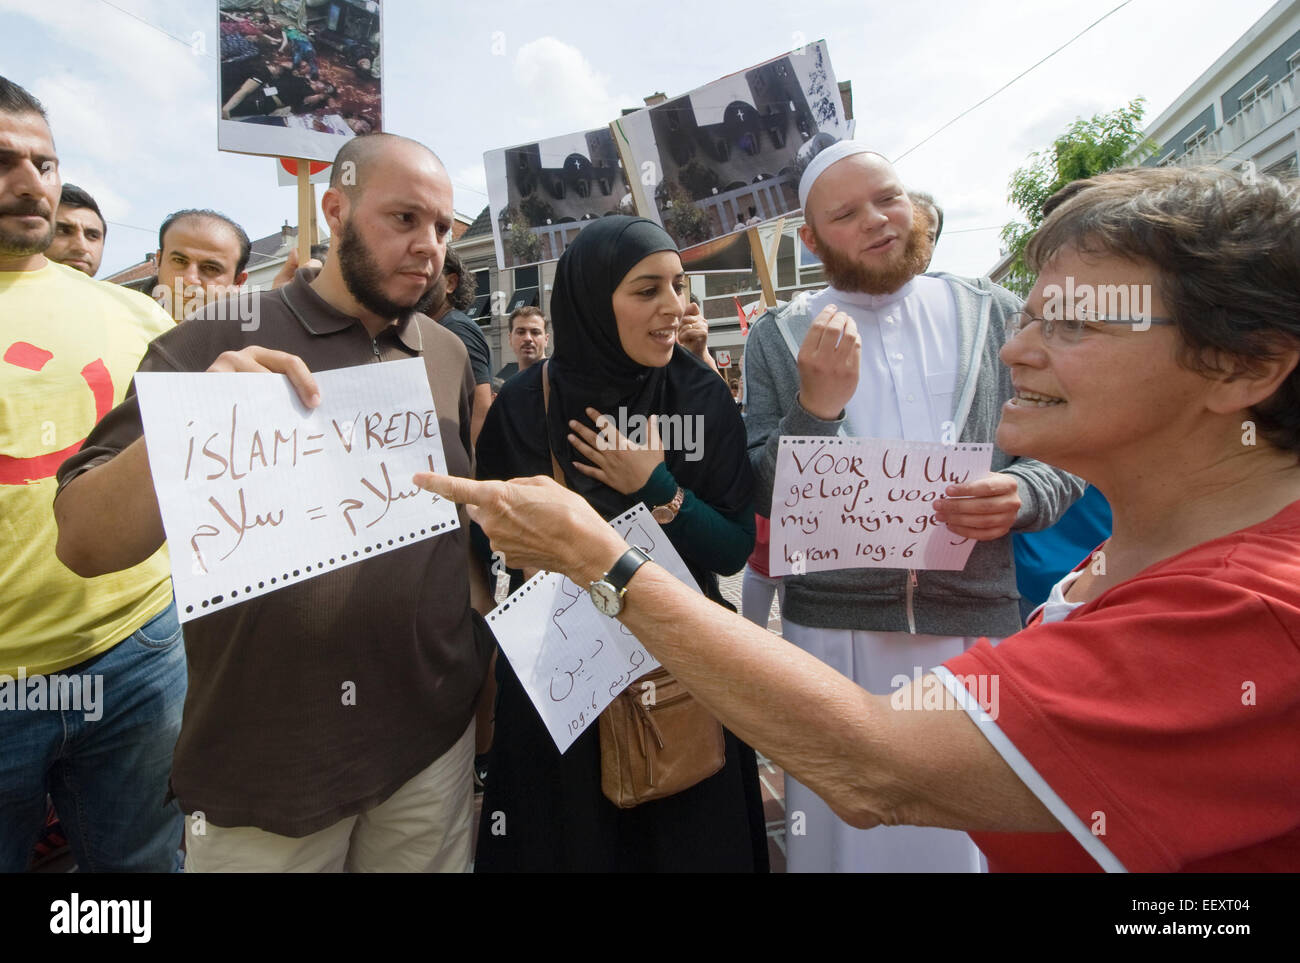 La discussion avec les musulmans au cours d'une manifestation organisée par suryoye les chrétiens contre le massacre des chrétiens en Irak Banque D'Images